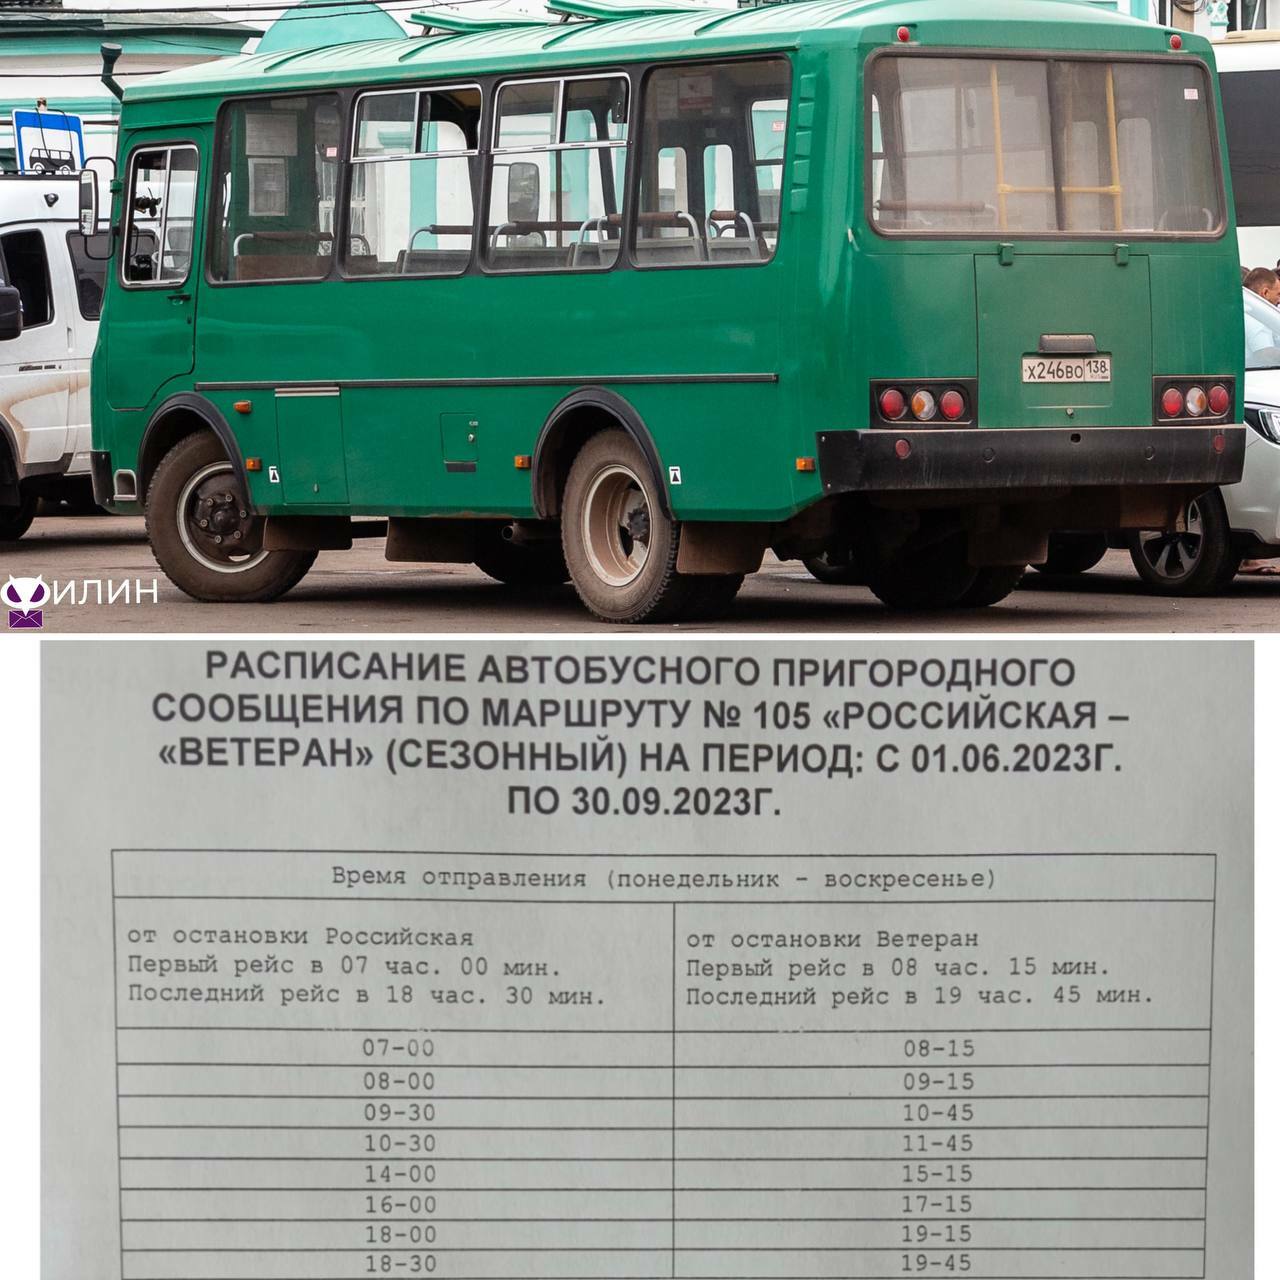 Автобус Таджикистан 3205. ЧАЗ 3205 Таджикистан. ПАЗ 32054 Иркутск. Автобус Таджикистан 3205 салон.